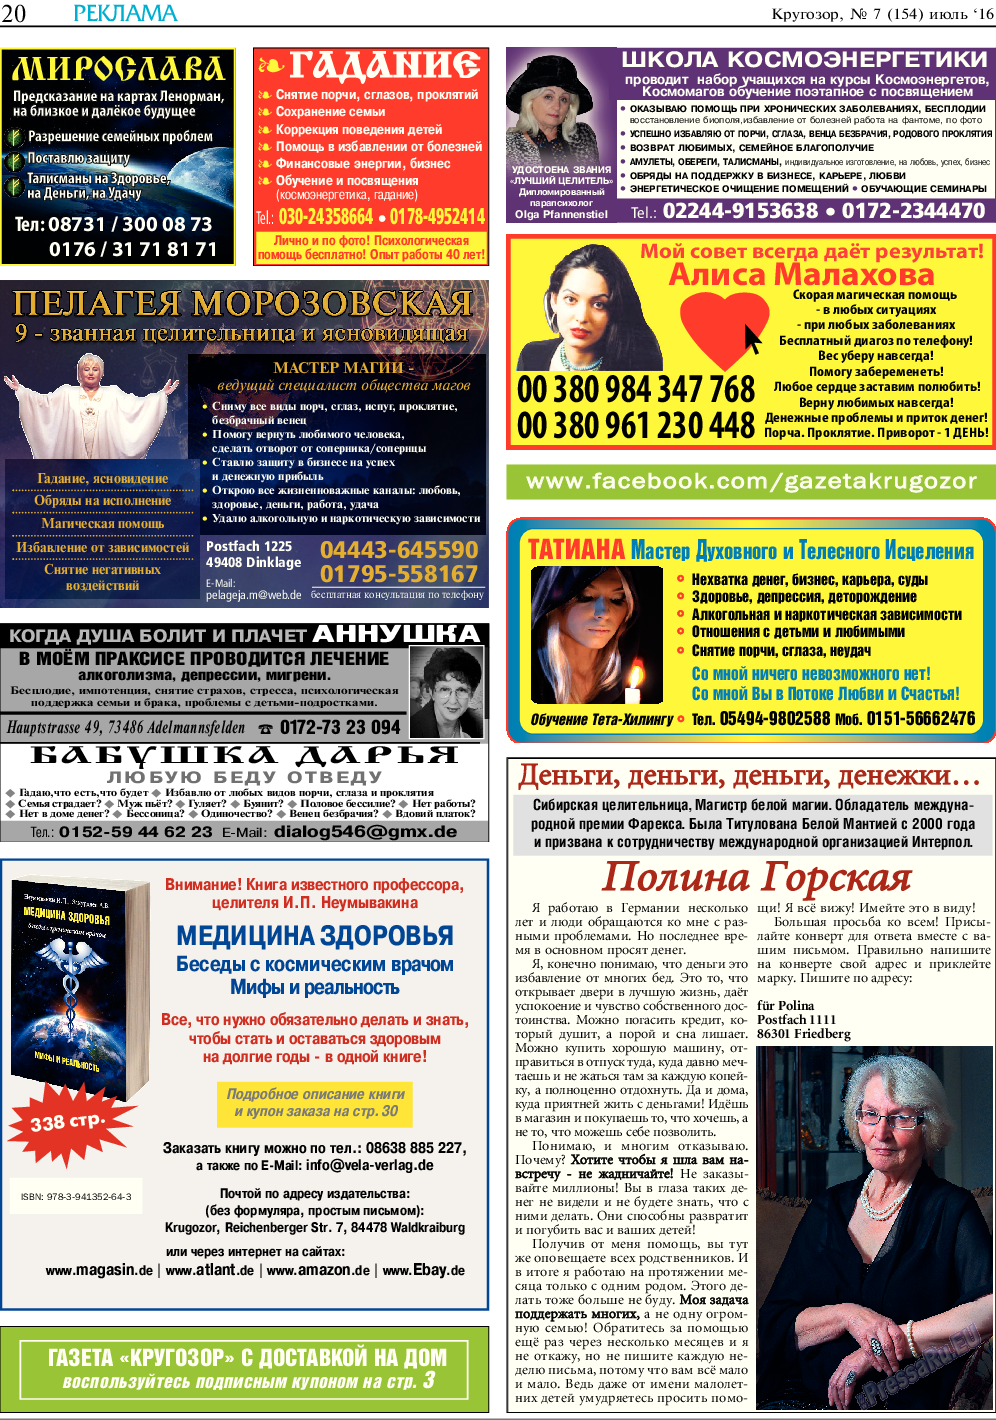 Кругозор, газета. 2016 №7 стр.20